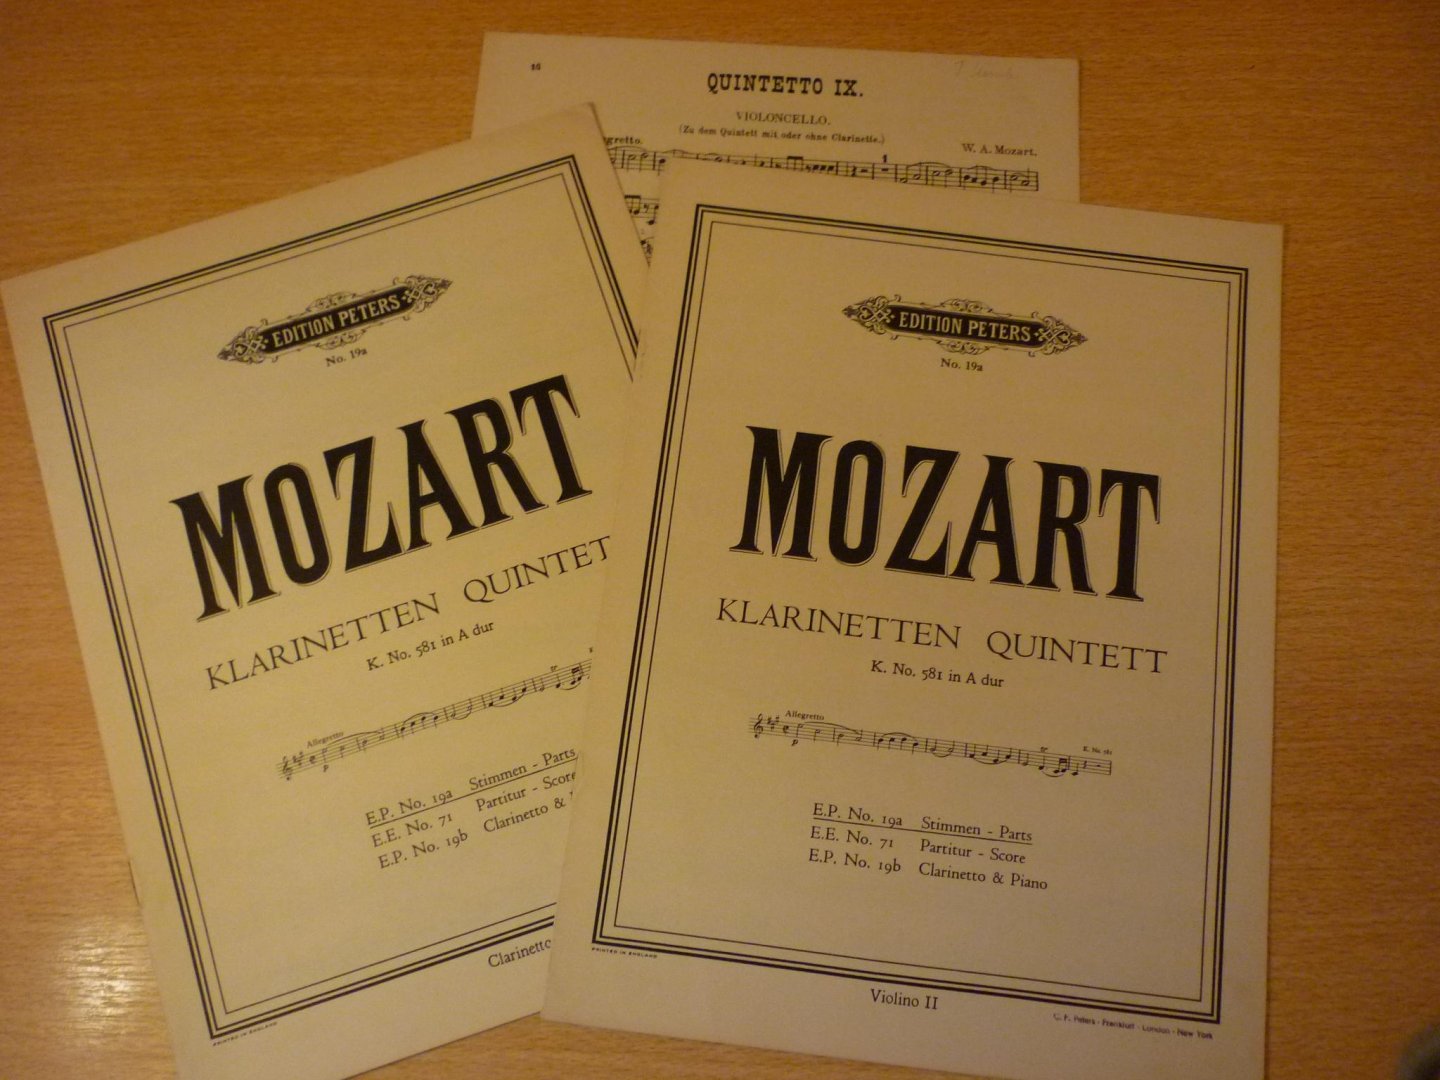 Mozart. W.A. (1756 – 1791) - Klarinetten Quintett; K. No. 581 in A dur; E.P. No. 19a Stimmen - Parts; fur Clarinette in A, Violino und Violoncello